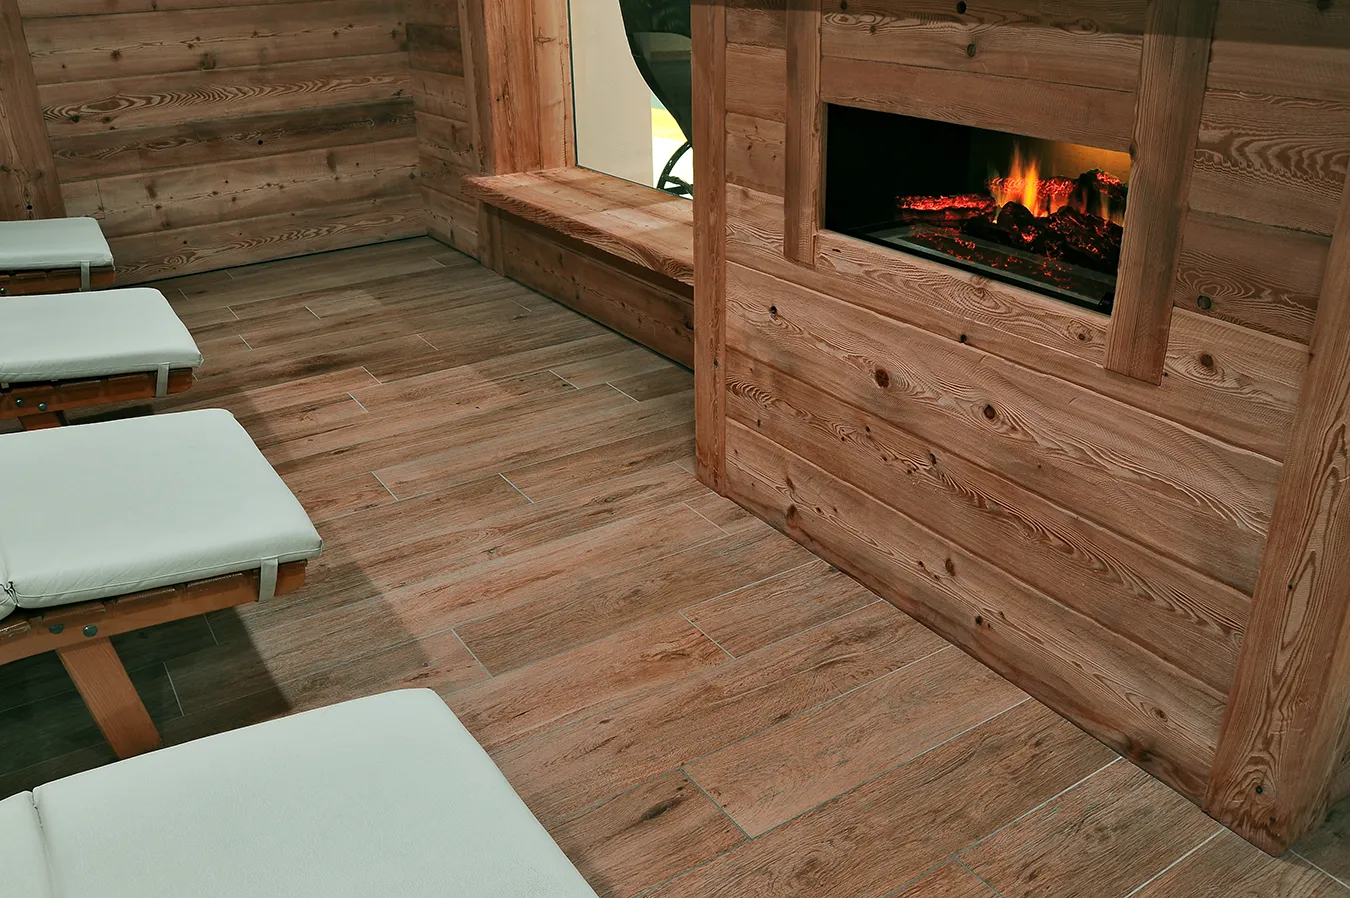 Gemütliche Entspannungsecke mit Holzeffekt-Bodenbelag aus der Evoke Kollektion, der sich harmonisch in das rustikale Ambiente mit elektrischem Kamin einfügt, für eine warme und einladende Atmosphäre.